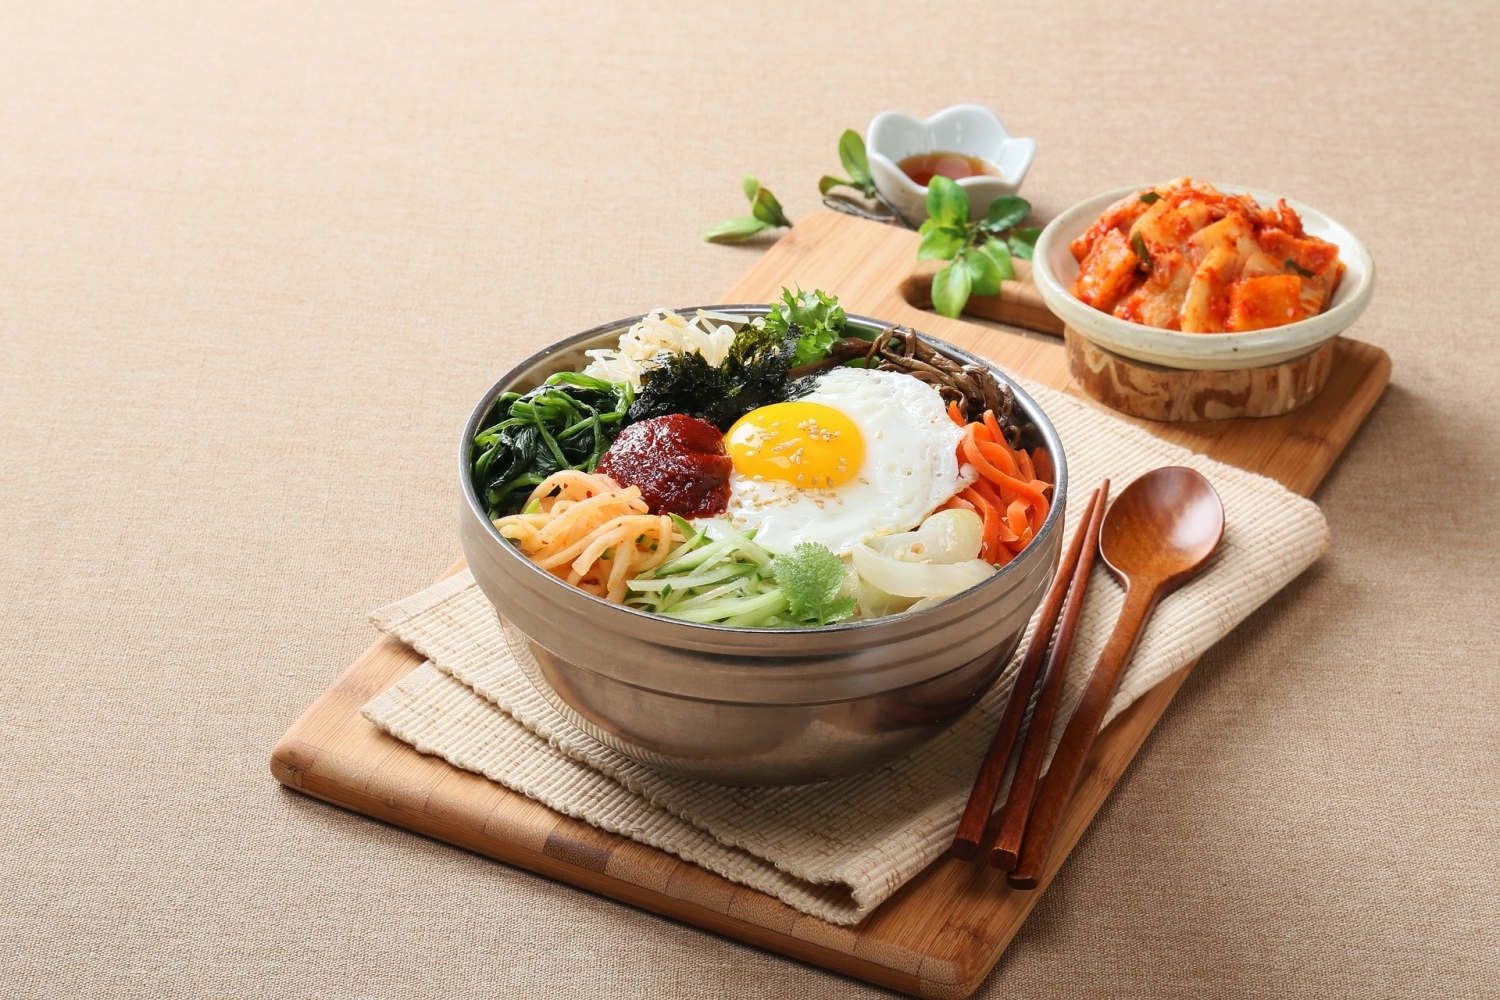 Traditional Korean Food - Bibimbap